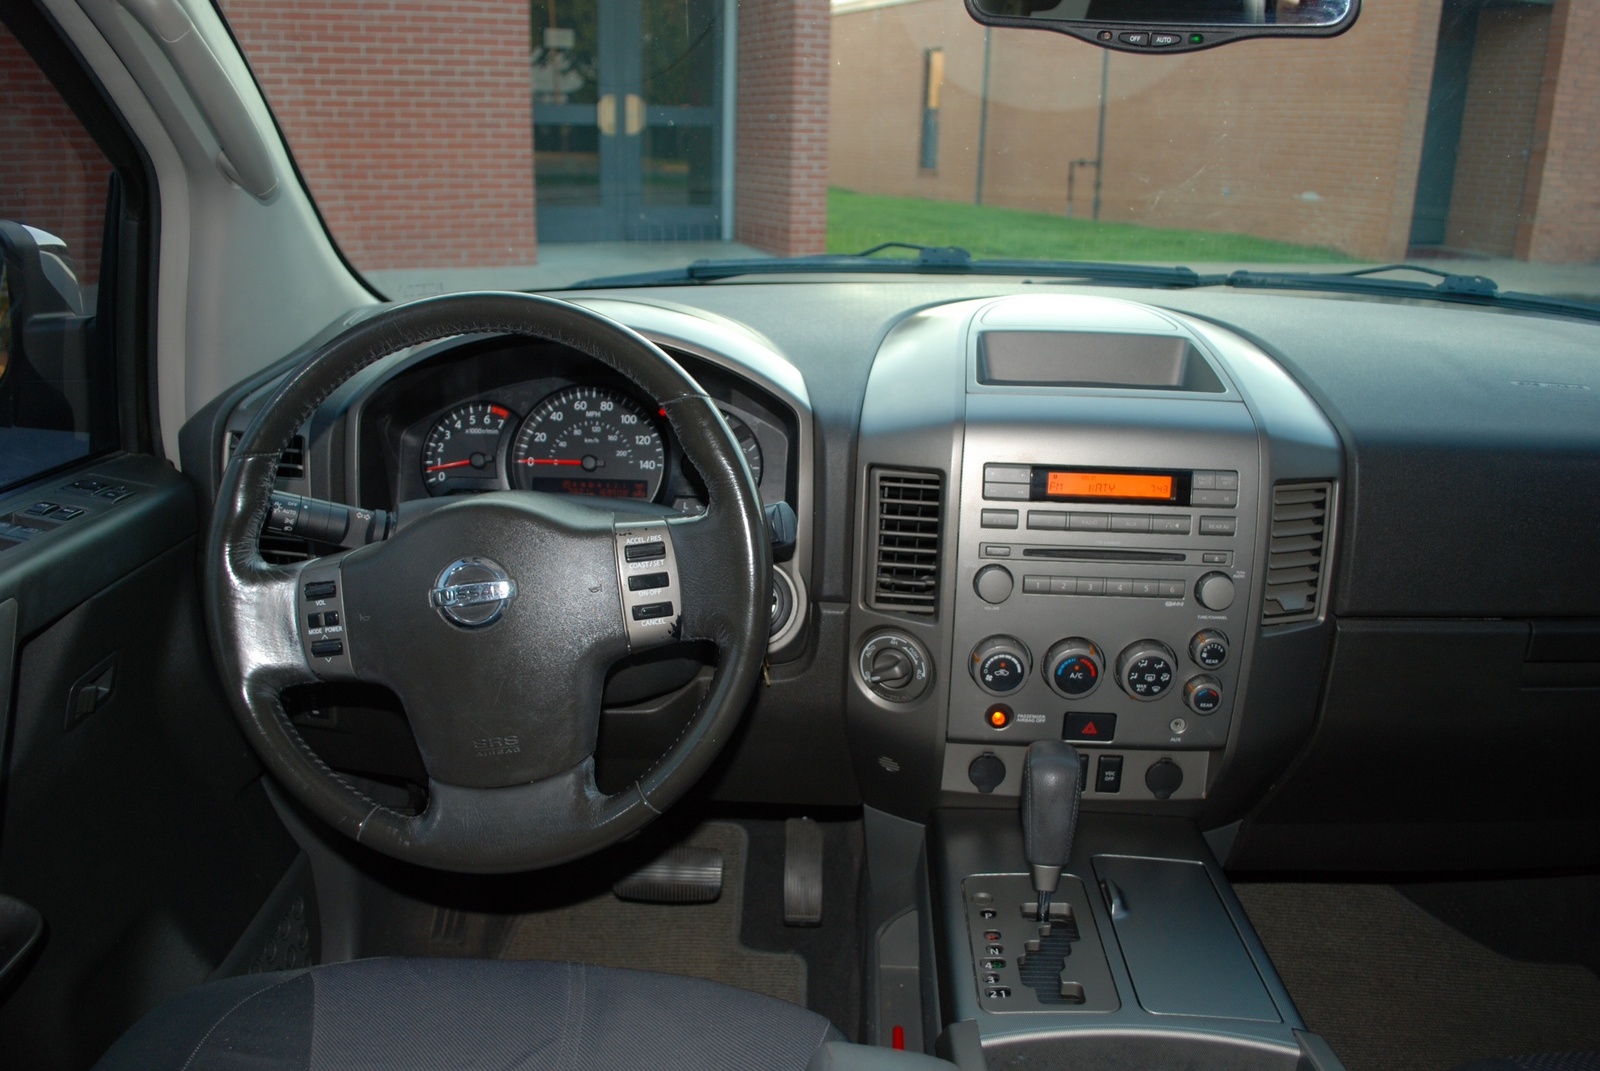 2005 Nissan armada interior pics #1